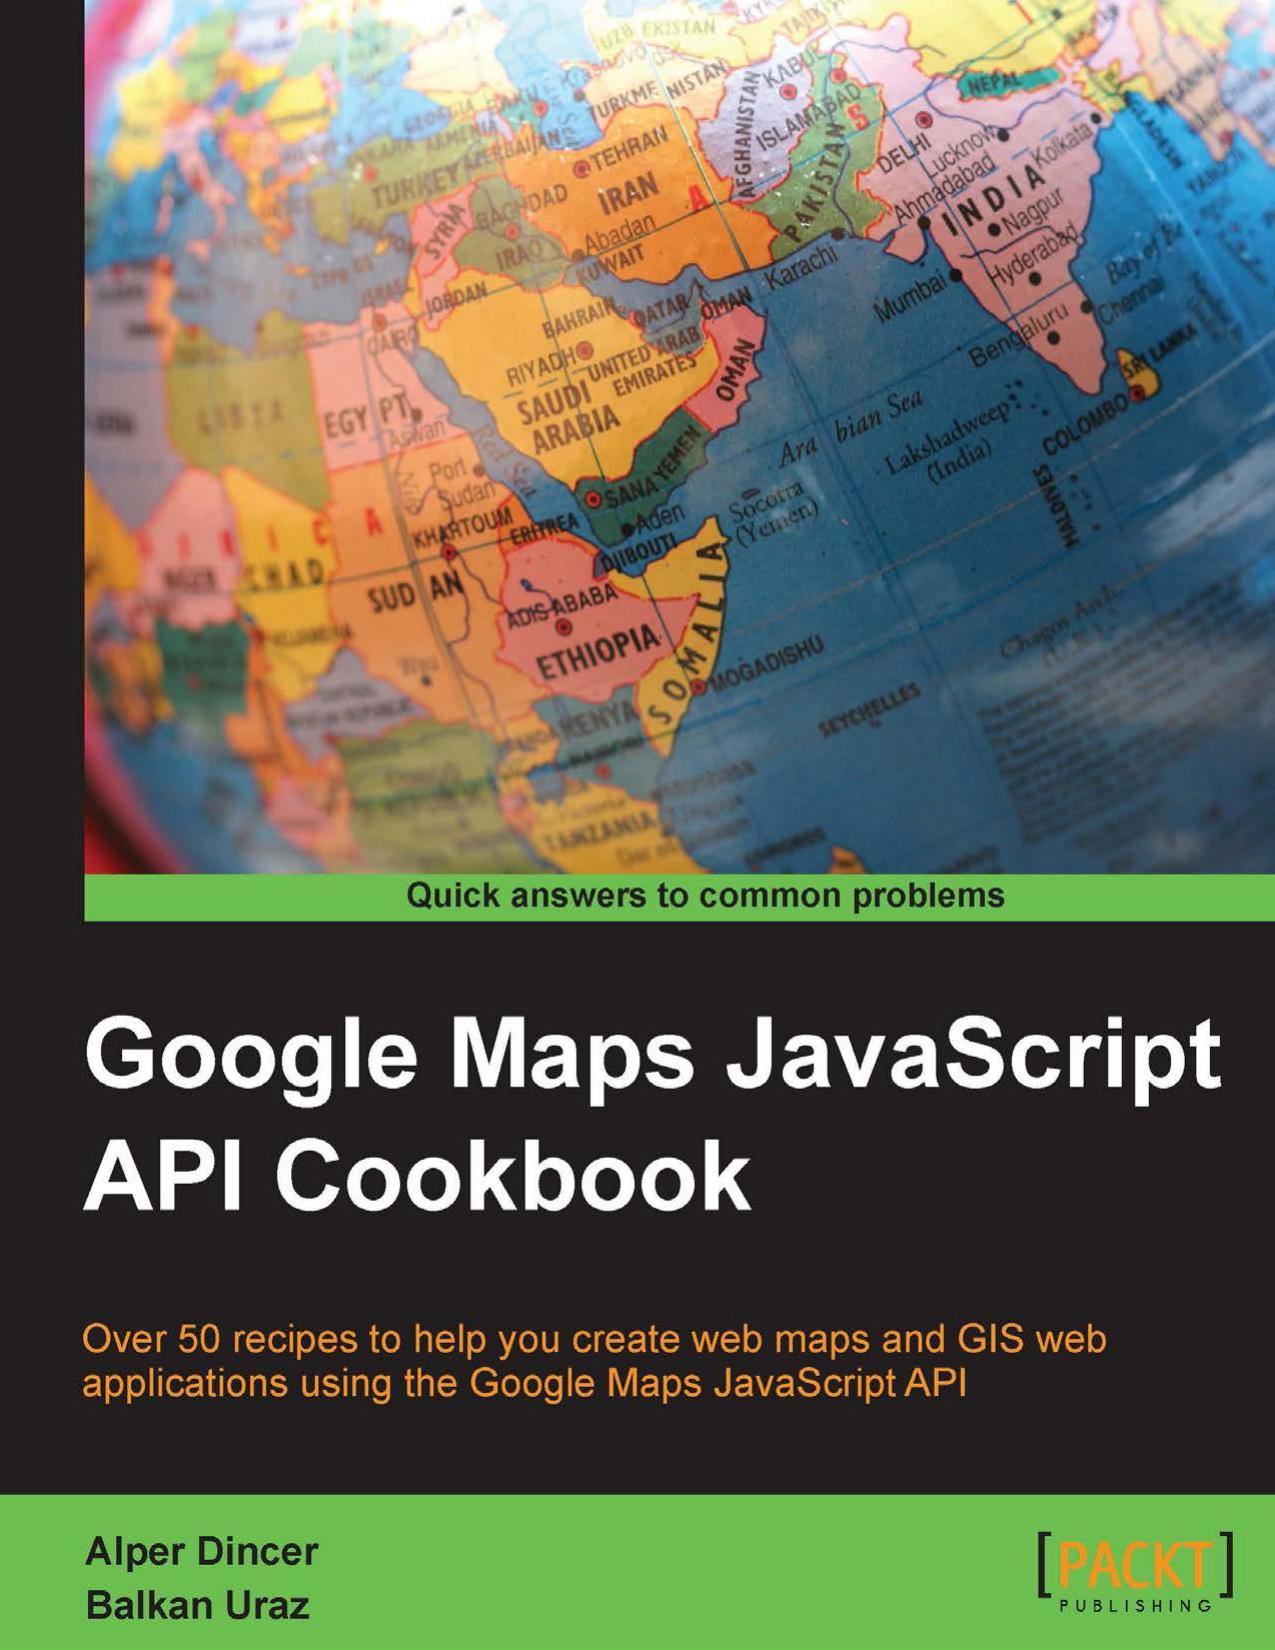 Google Maps API Cookbook